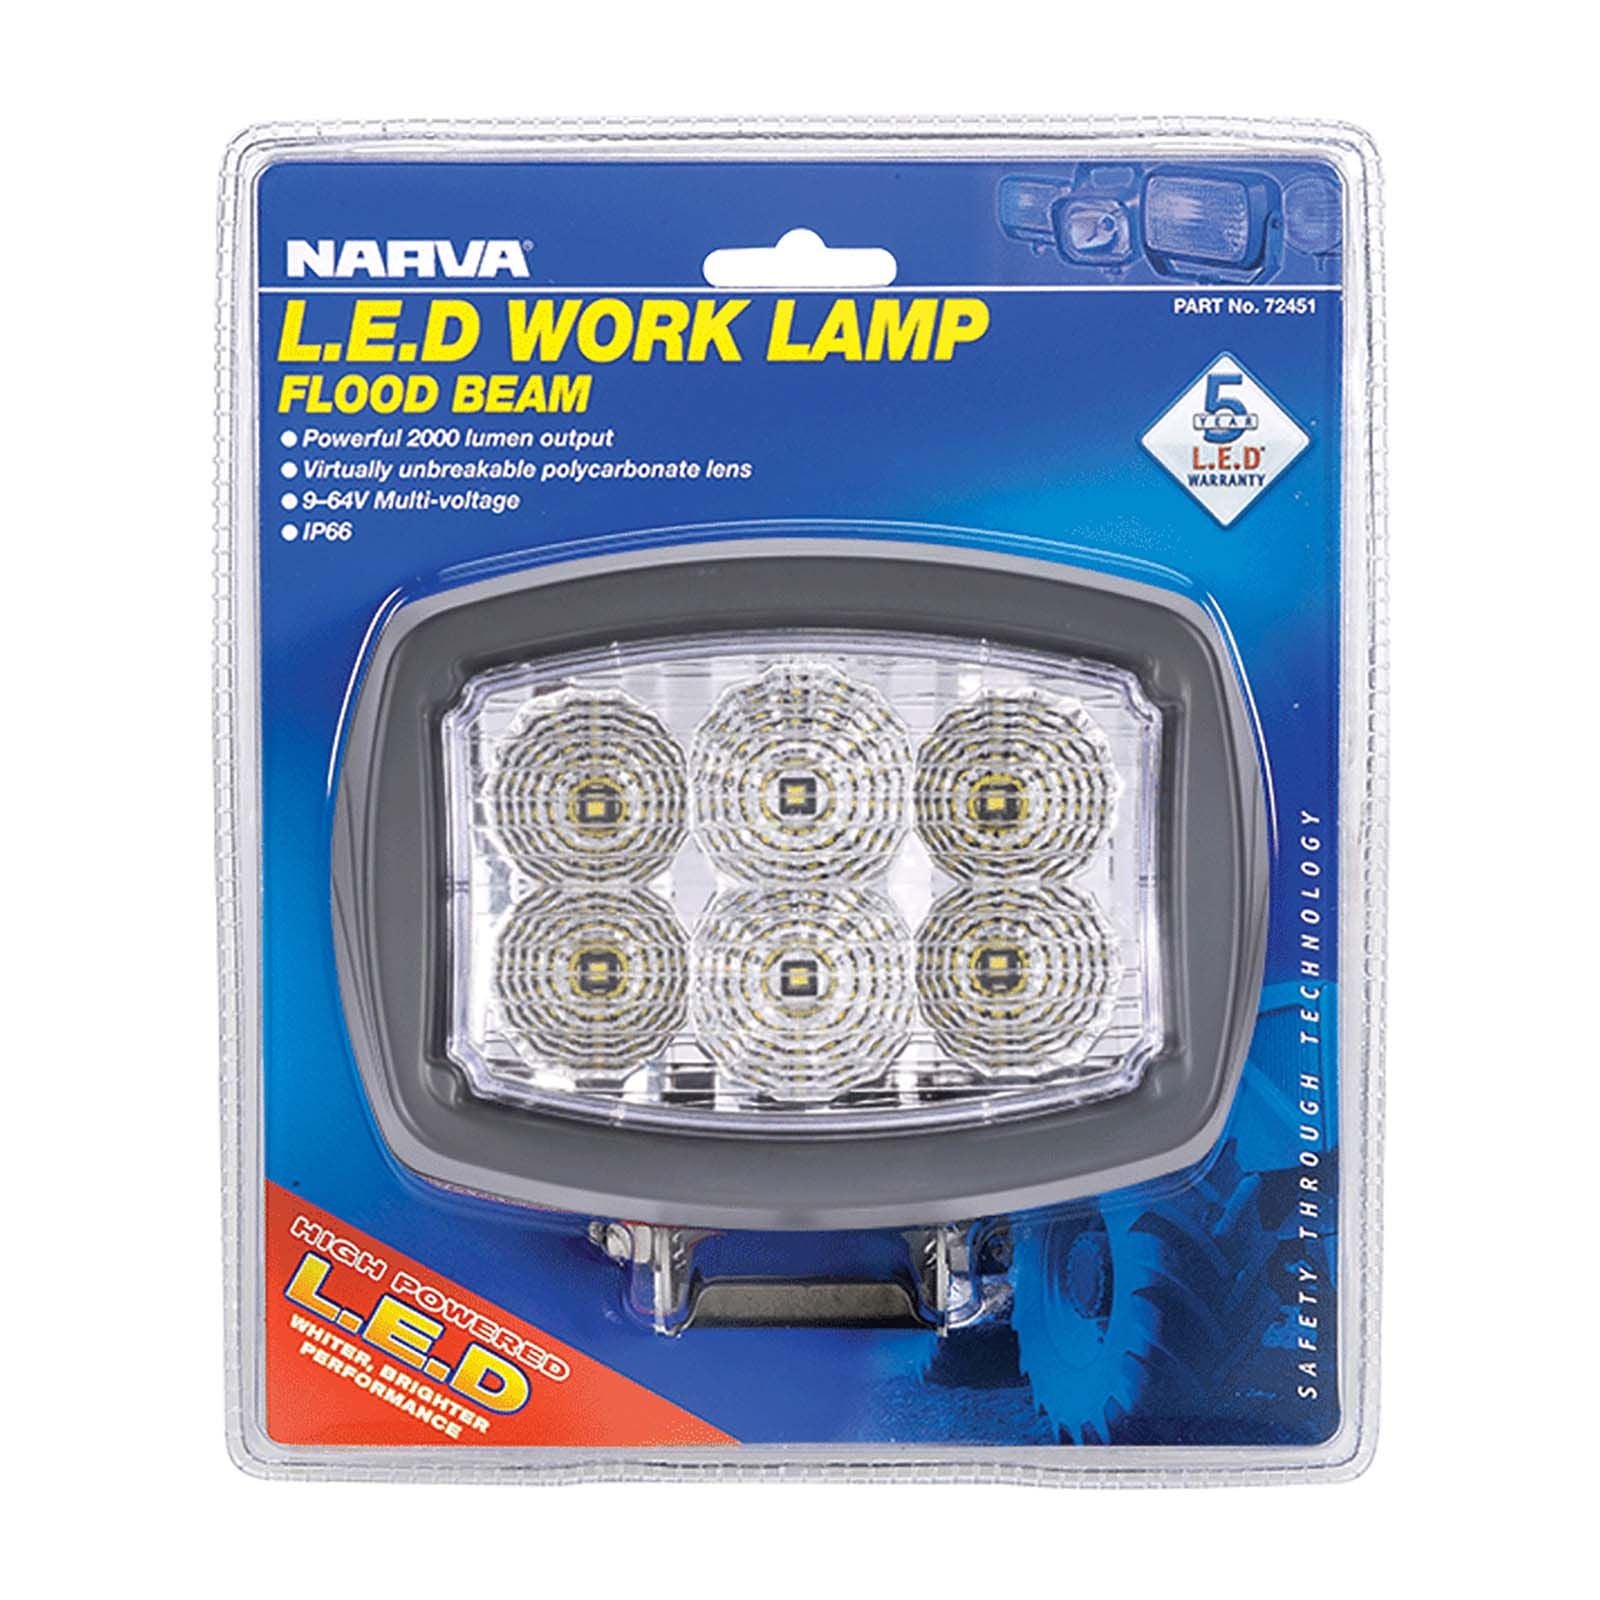 9-64V LED Work Lamp Flood Beam - 3000 lumens